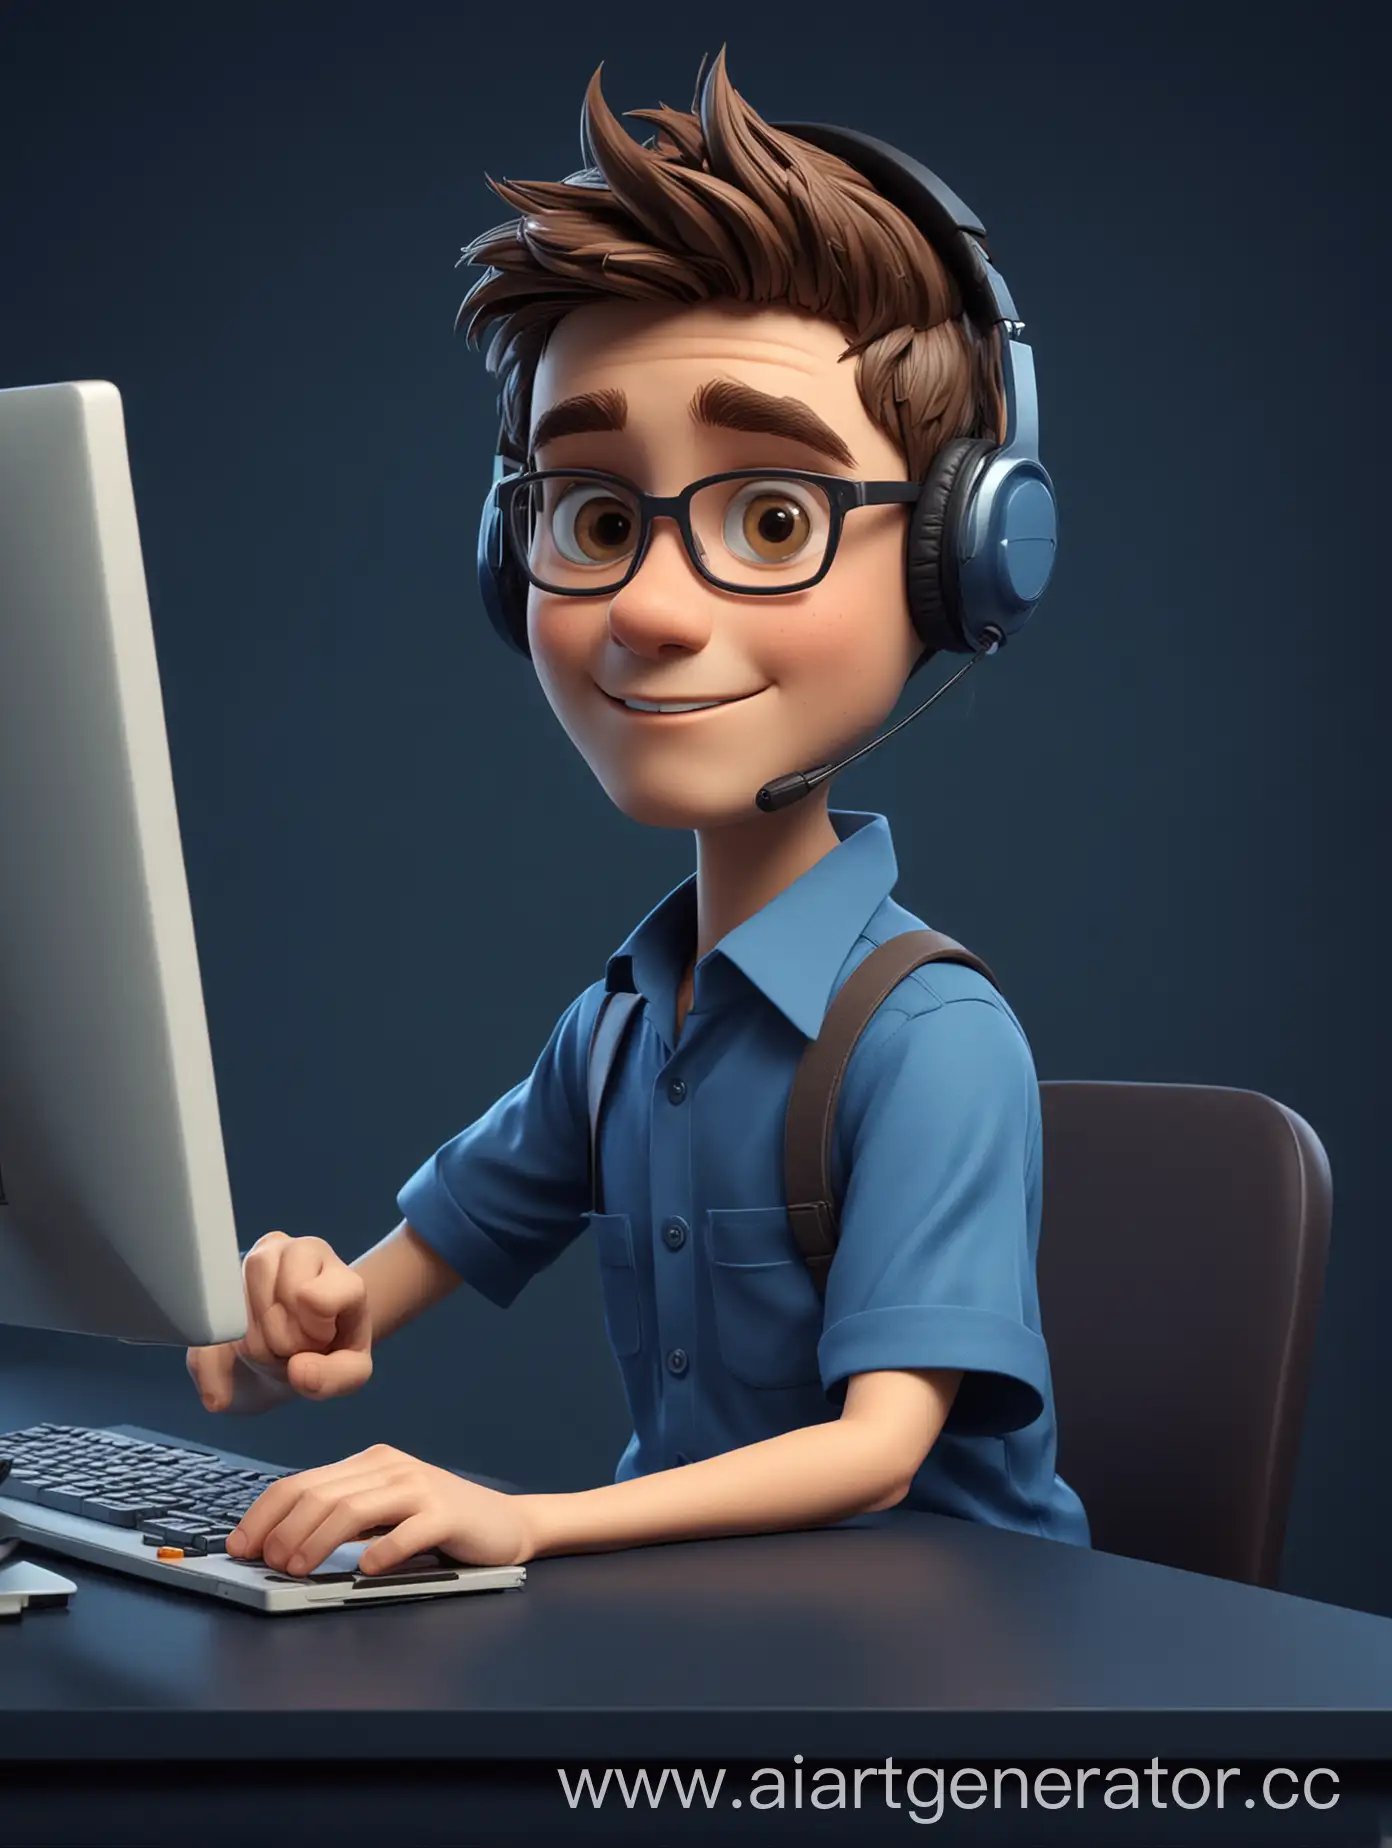 специалист контакт центра - мультипликационный персонаж, мальчик. Сидит за столом с компьютером, на голове одета гарнитура. на заднем фоне стена, с темно-синим фоном